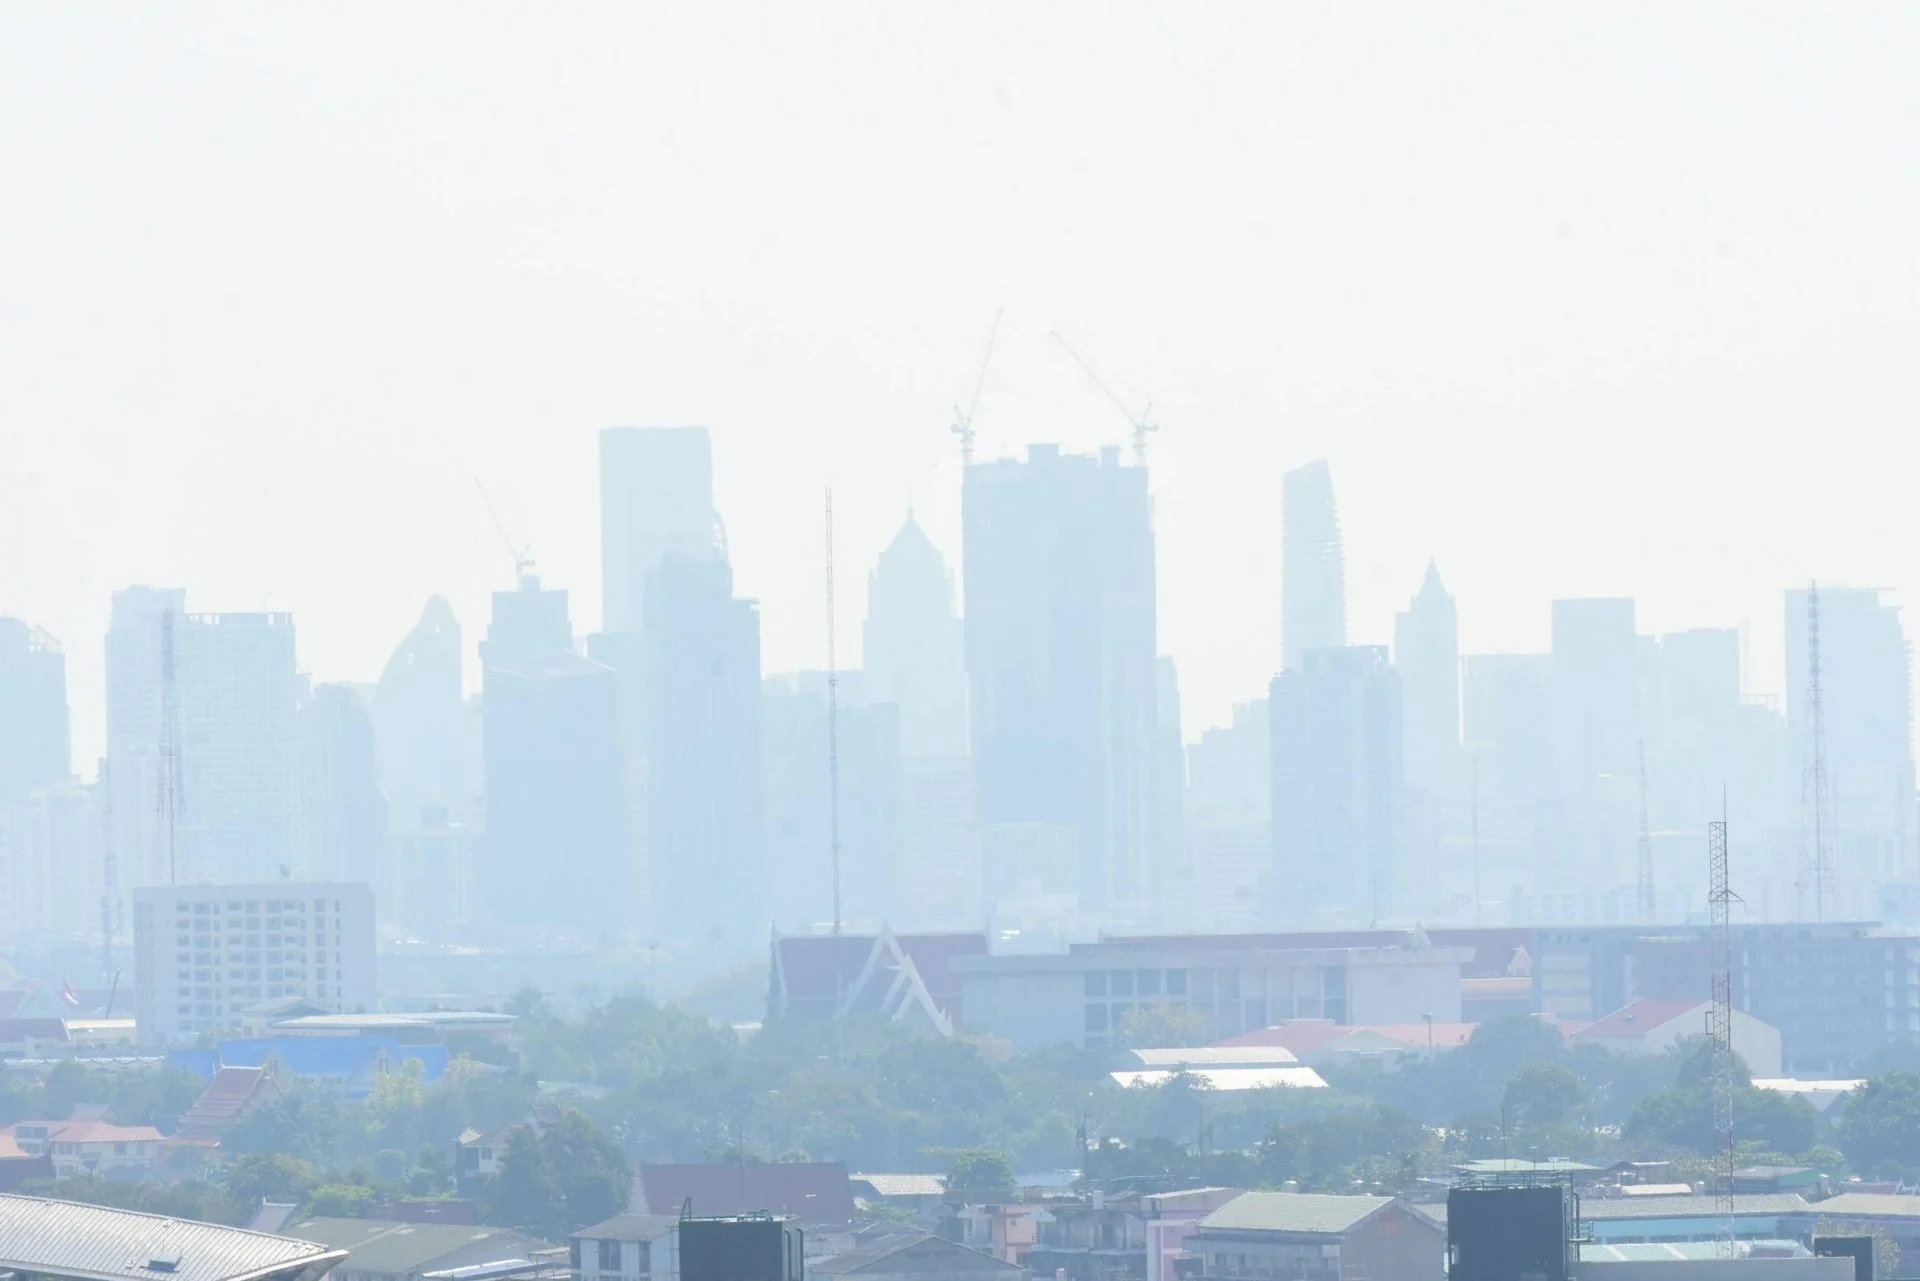 พื้นที่เฝ้าระวัง วันที่ 12 ก.พ. 67 ‼️ ค่า PM 2.5 เกินมาตรฐานในระดับสีส้ม เริ่มมีผลกระทบต่อสุขภาพ จำนวน 17 พื้นที่ 